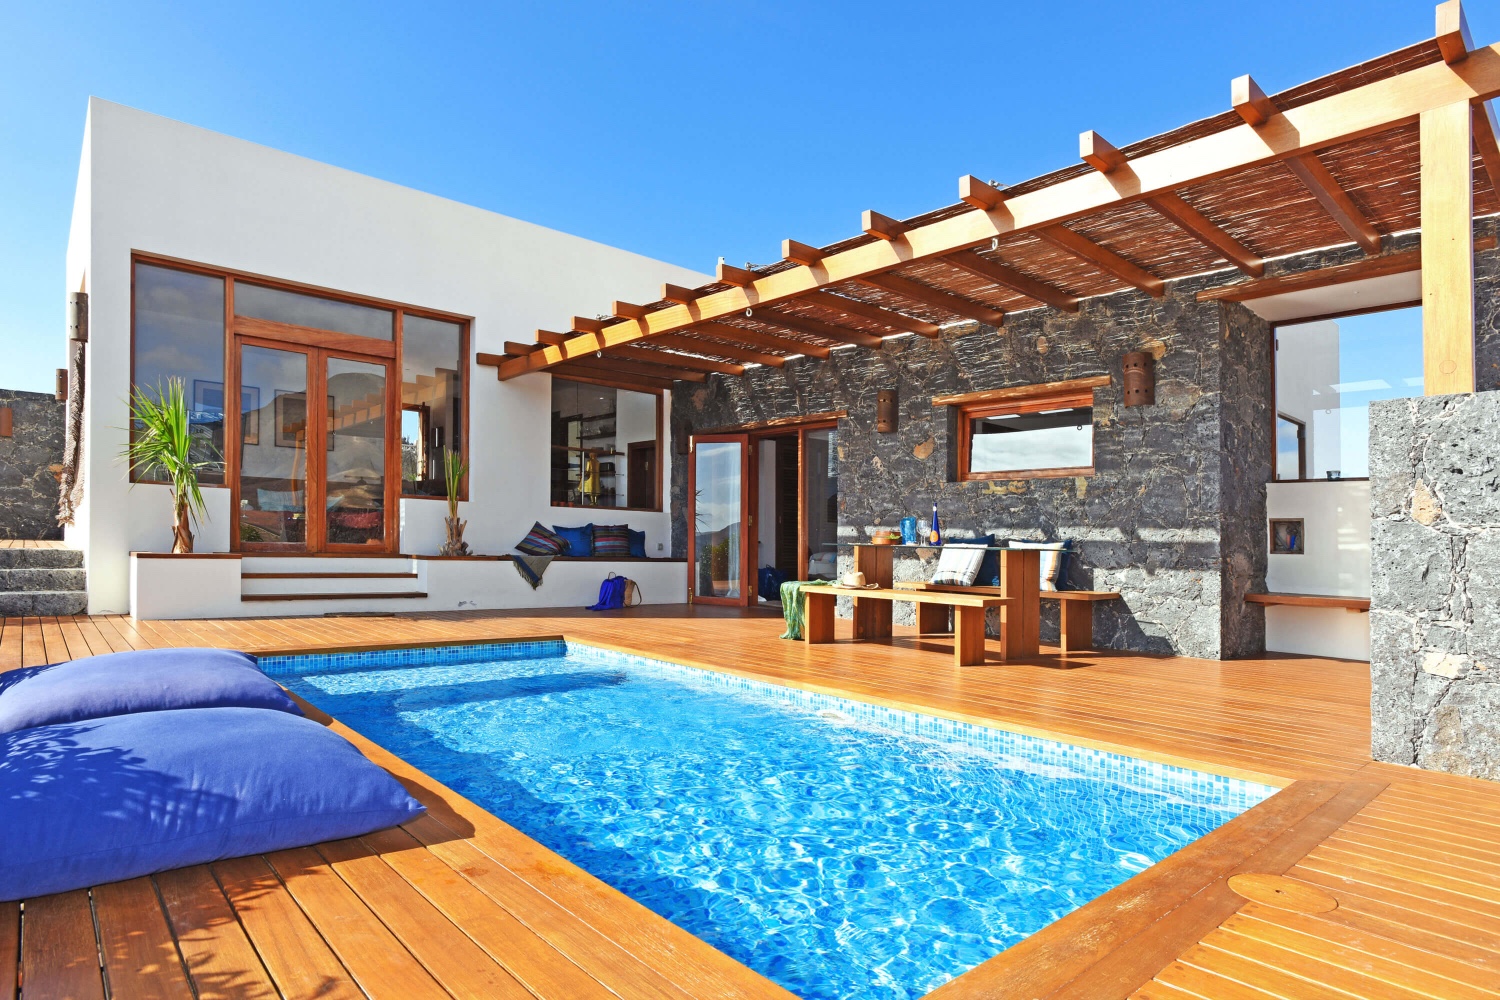 Villa de lujo con estilo, dos dormitorios, piscina privada y magníficas vistas al paisaje volcánico en una zona cerca de la playa en Pájara